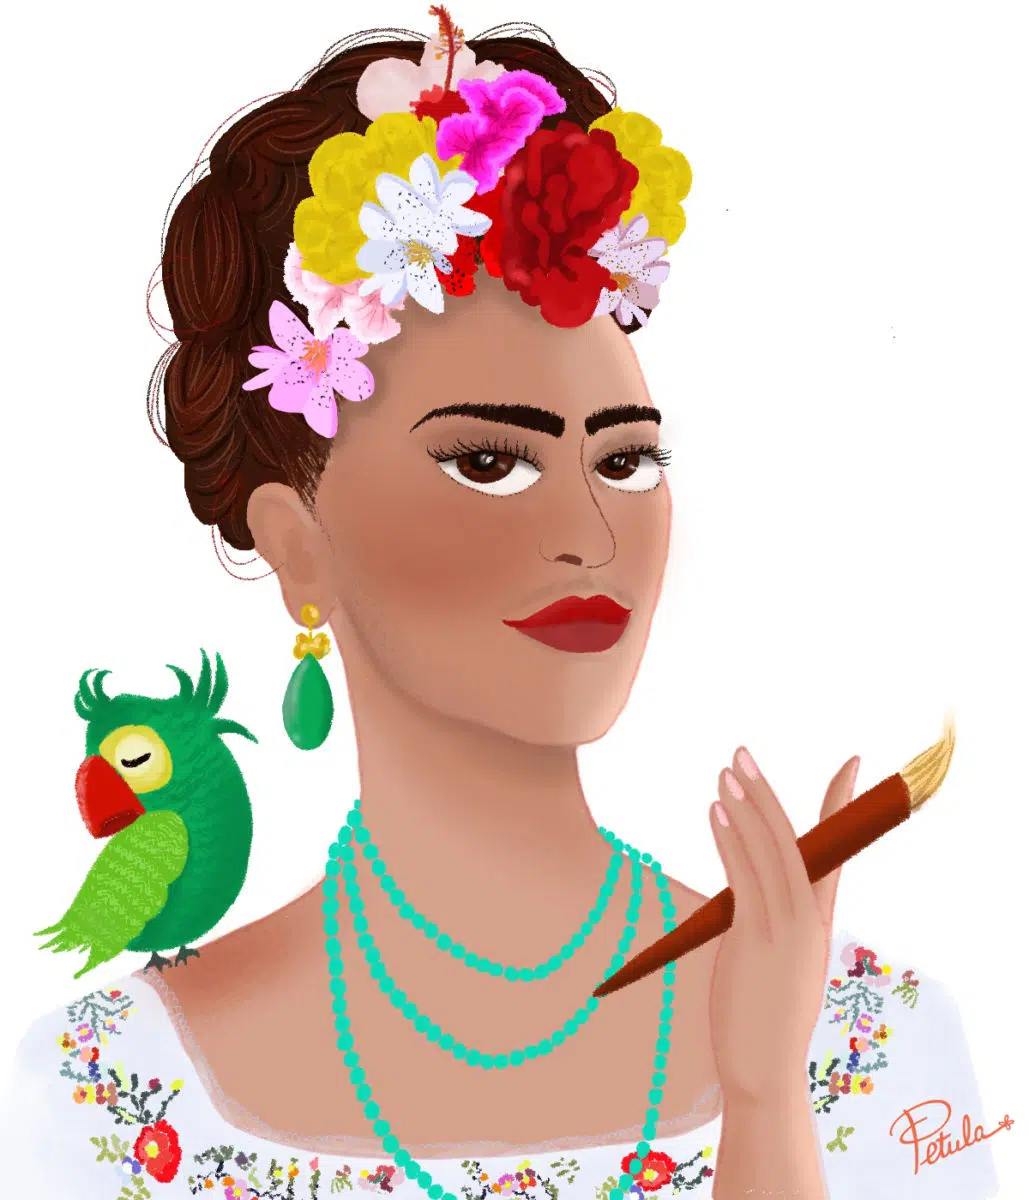 Petula Rocher "Heureusement y'a Frida"